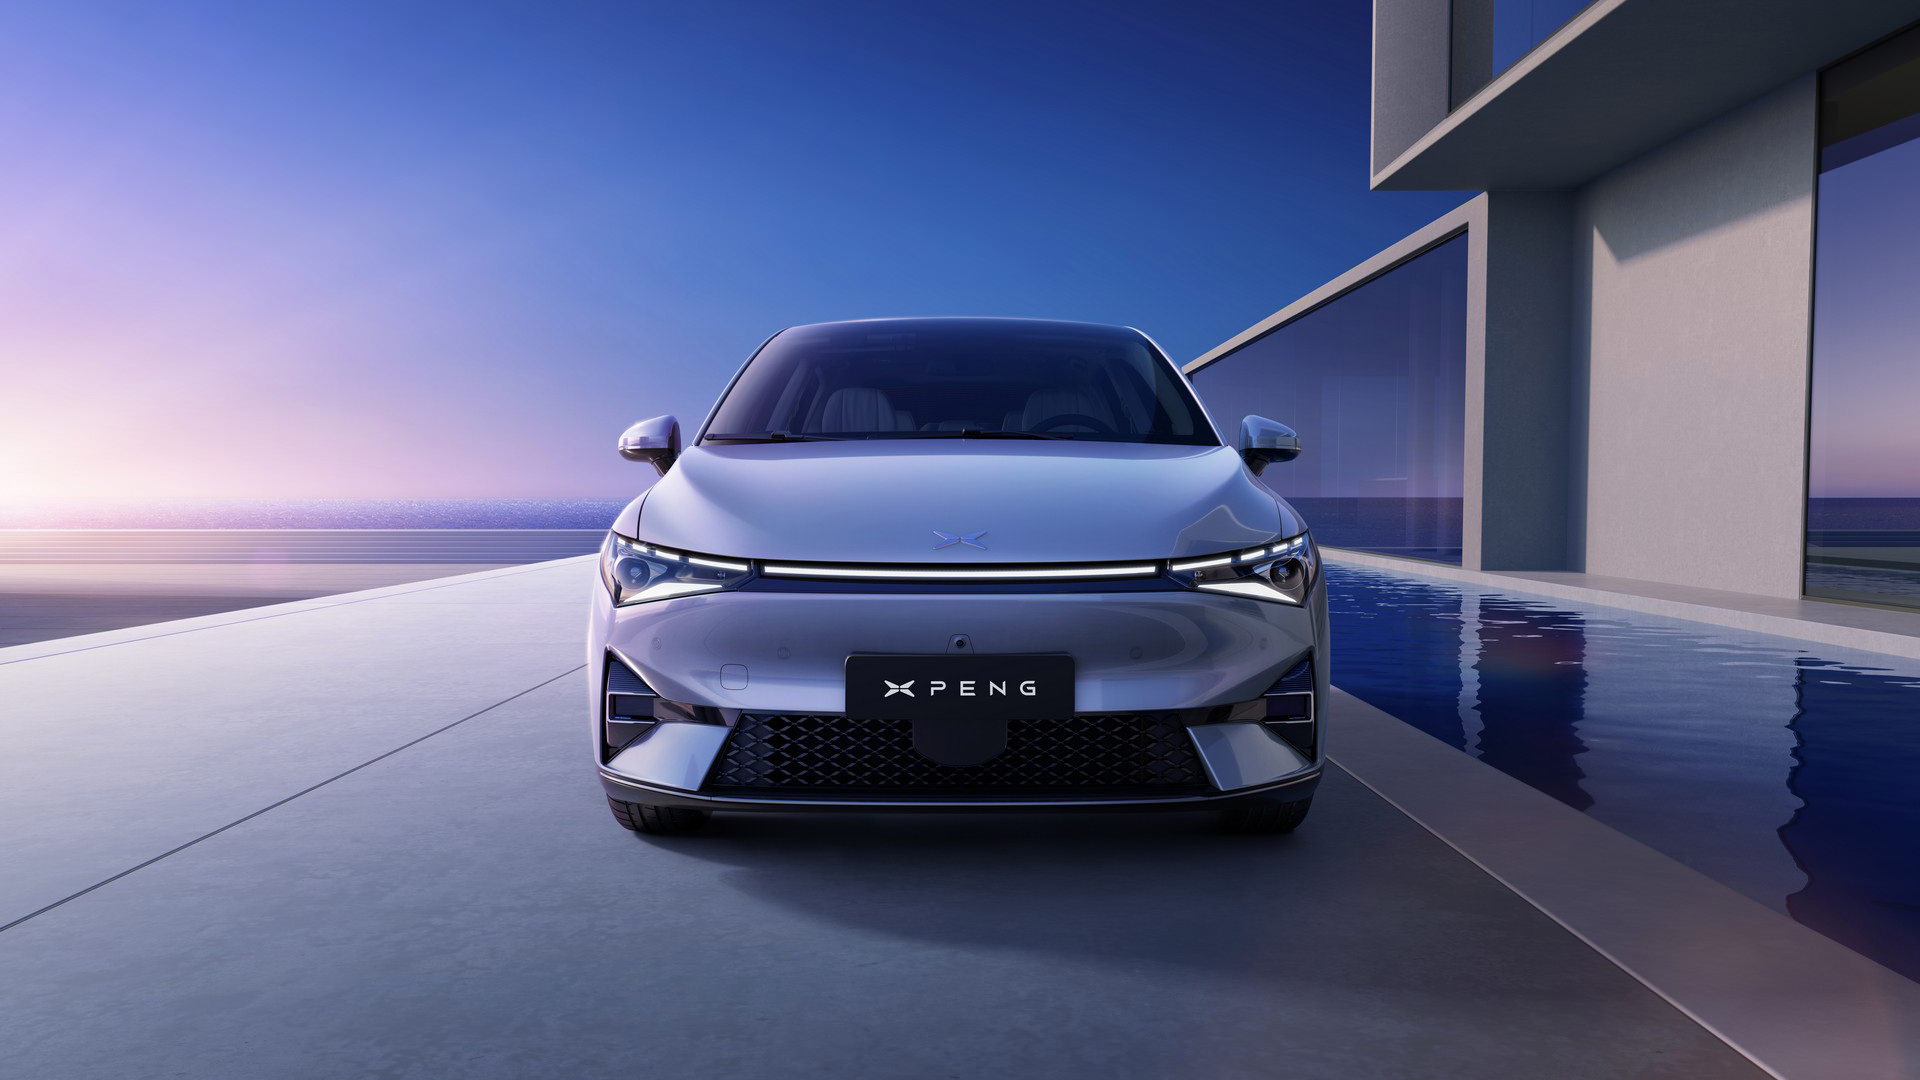 2022 xpeng p5 6 - ژیپنگ P5؛ اولین خودرو چینی مجهز به لیدار و فناوری خودران معرفی شد